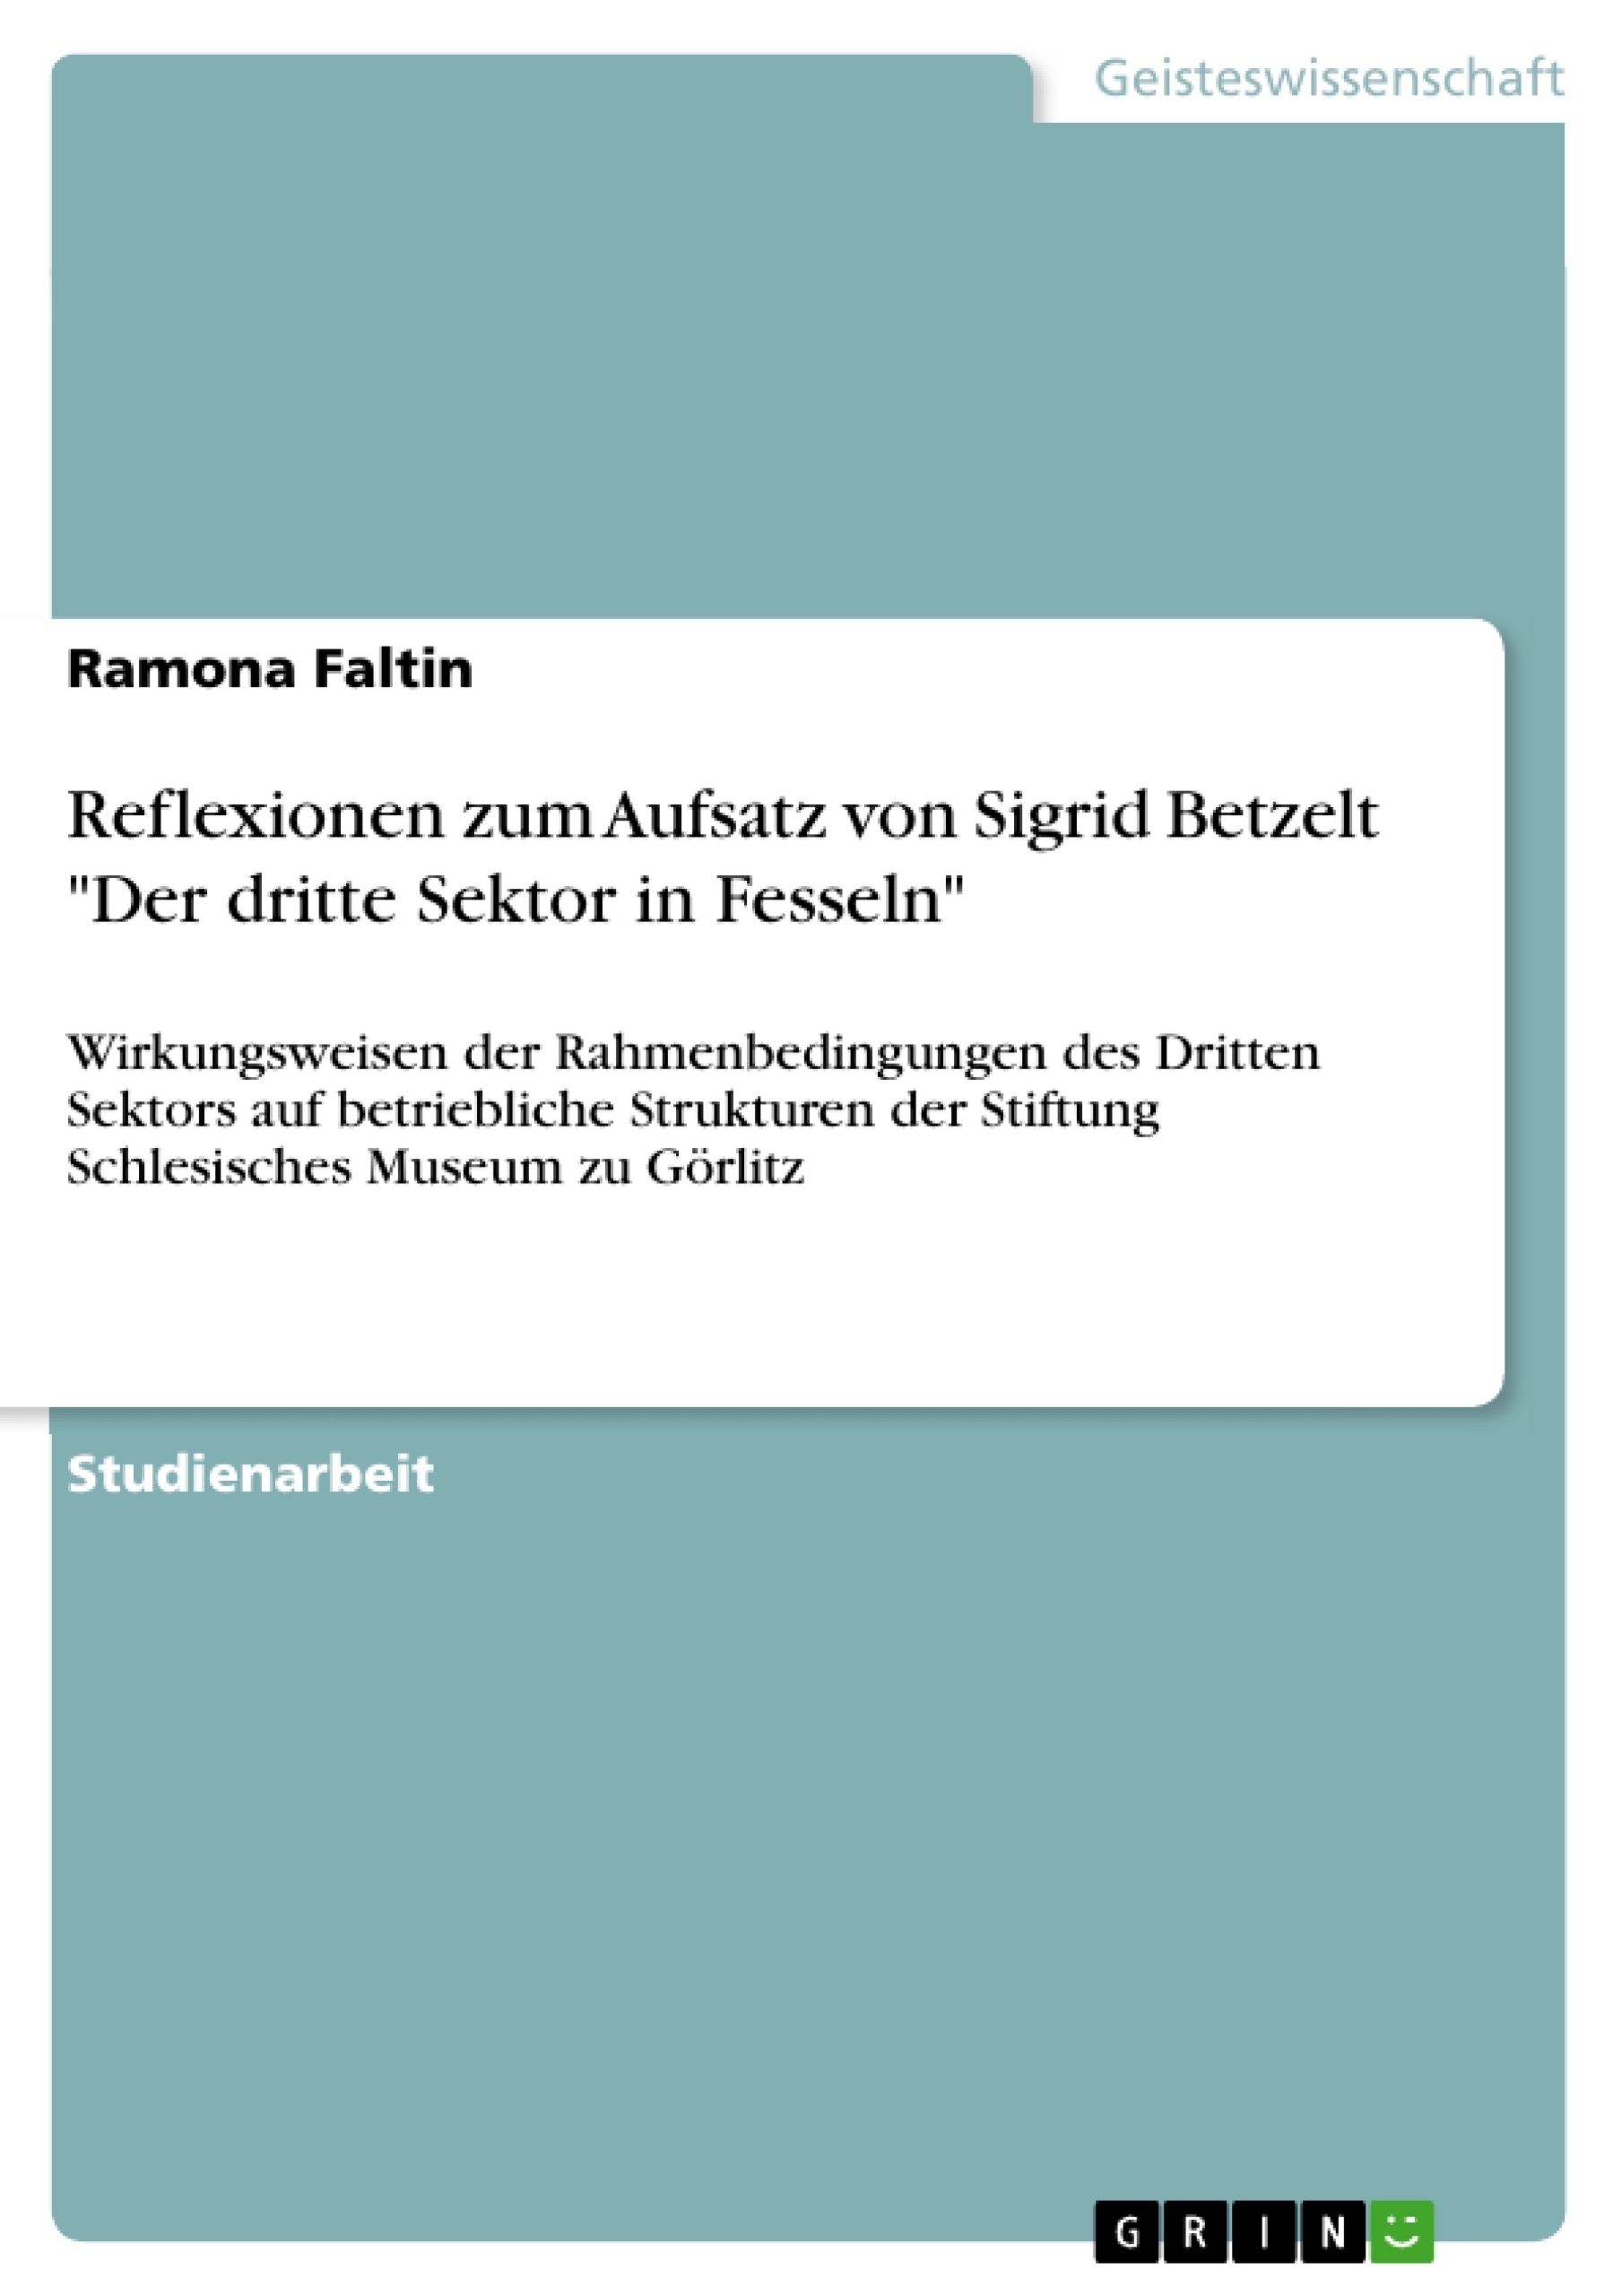 Title: Reflexionen zum Aufsatz von Sigrid Betzelt "Der dritte Sektor in Fesseln"